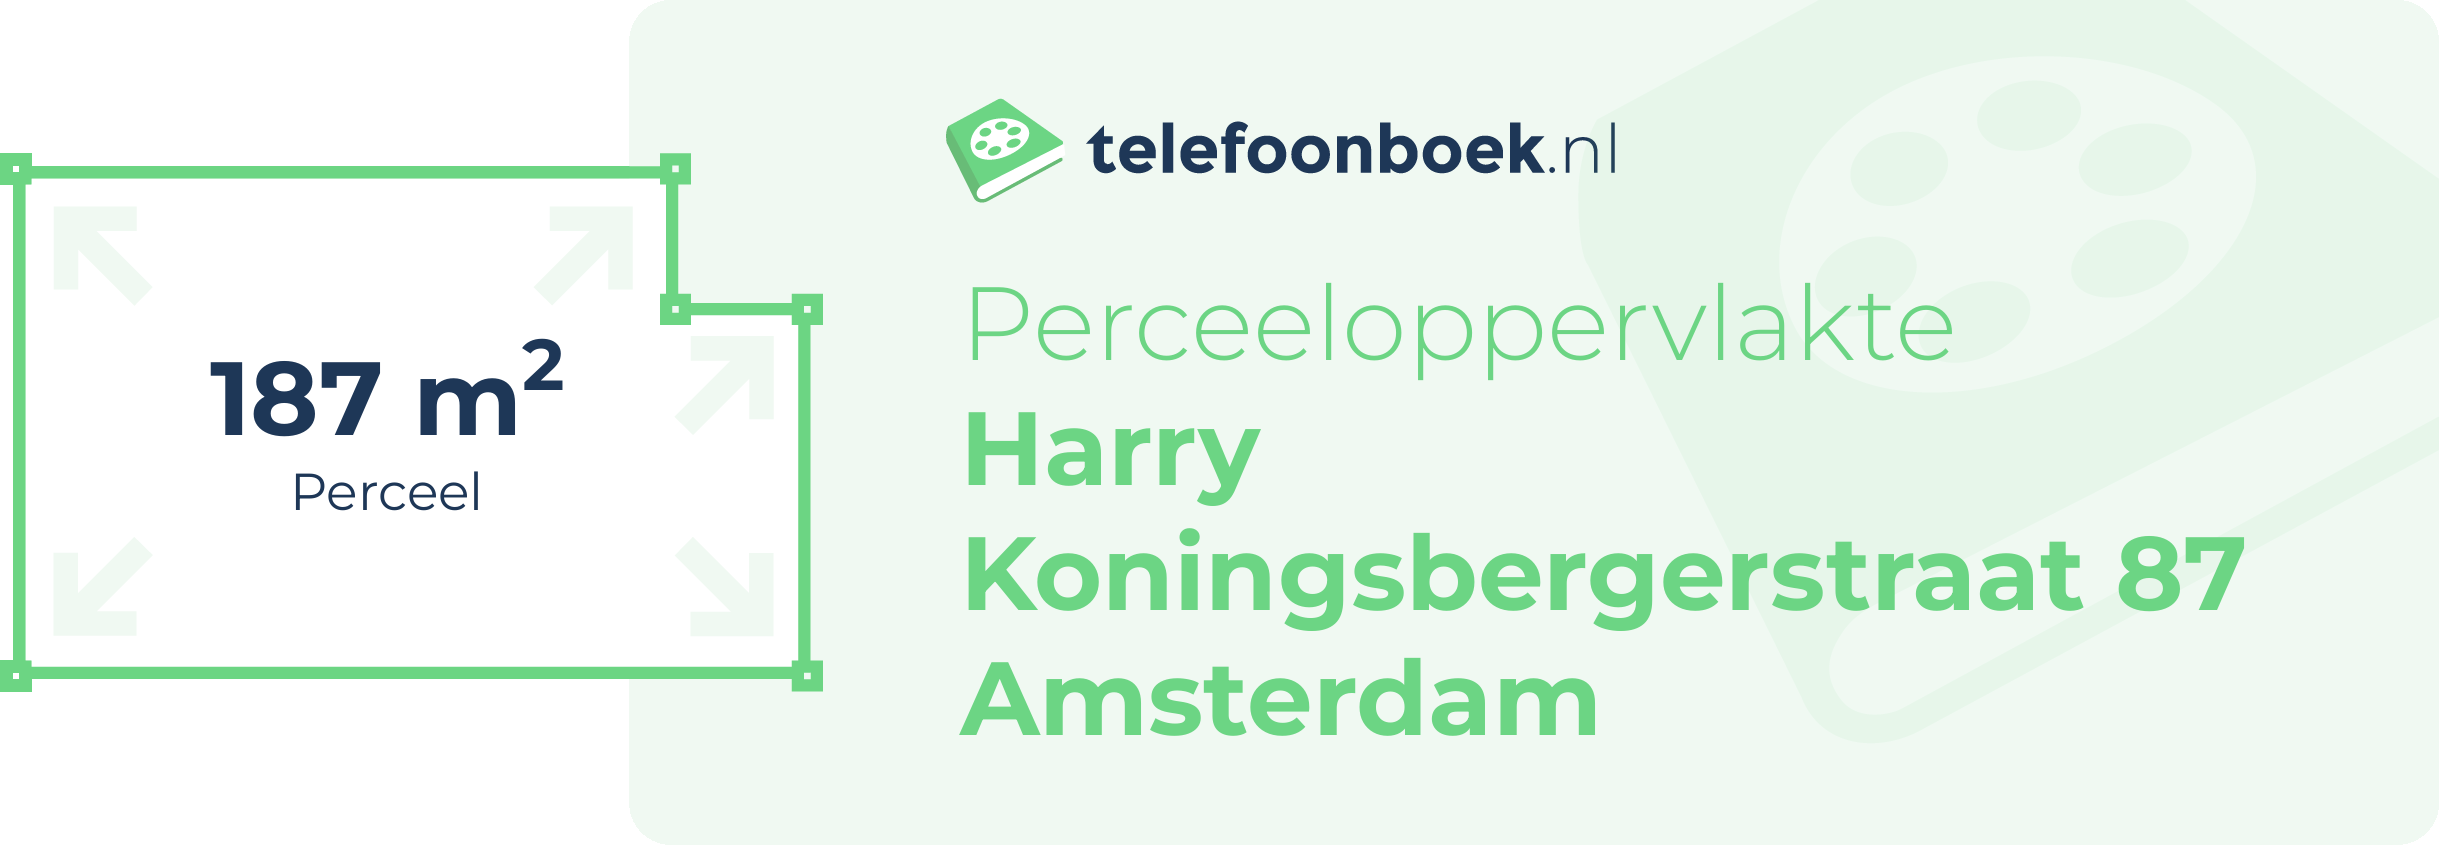 Perceeloppervlakte Harry Koningsbergerstraat 87 Amsterdam